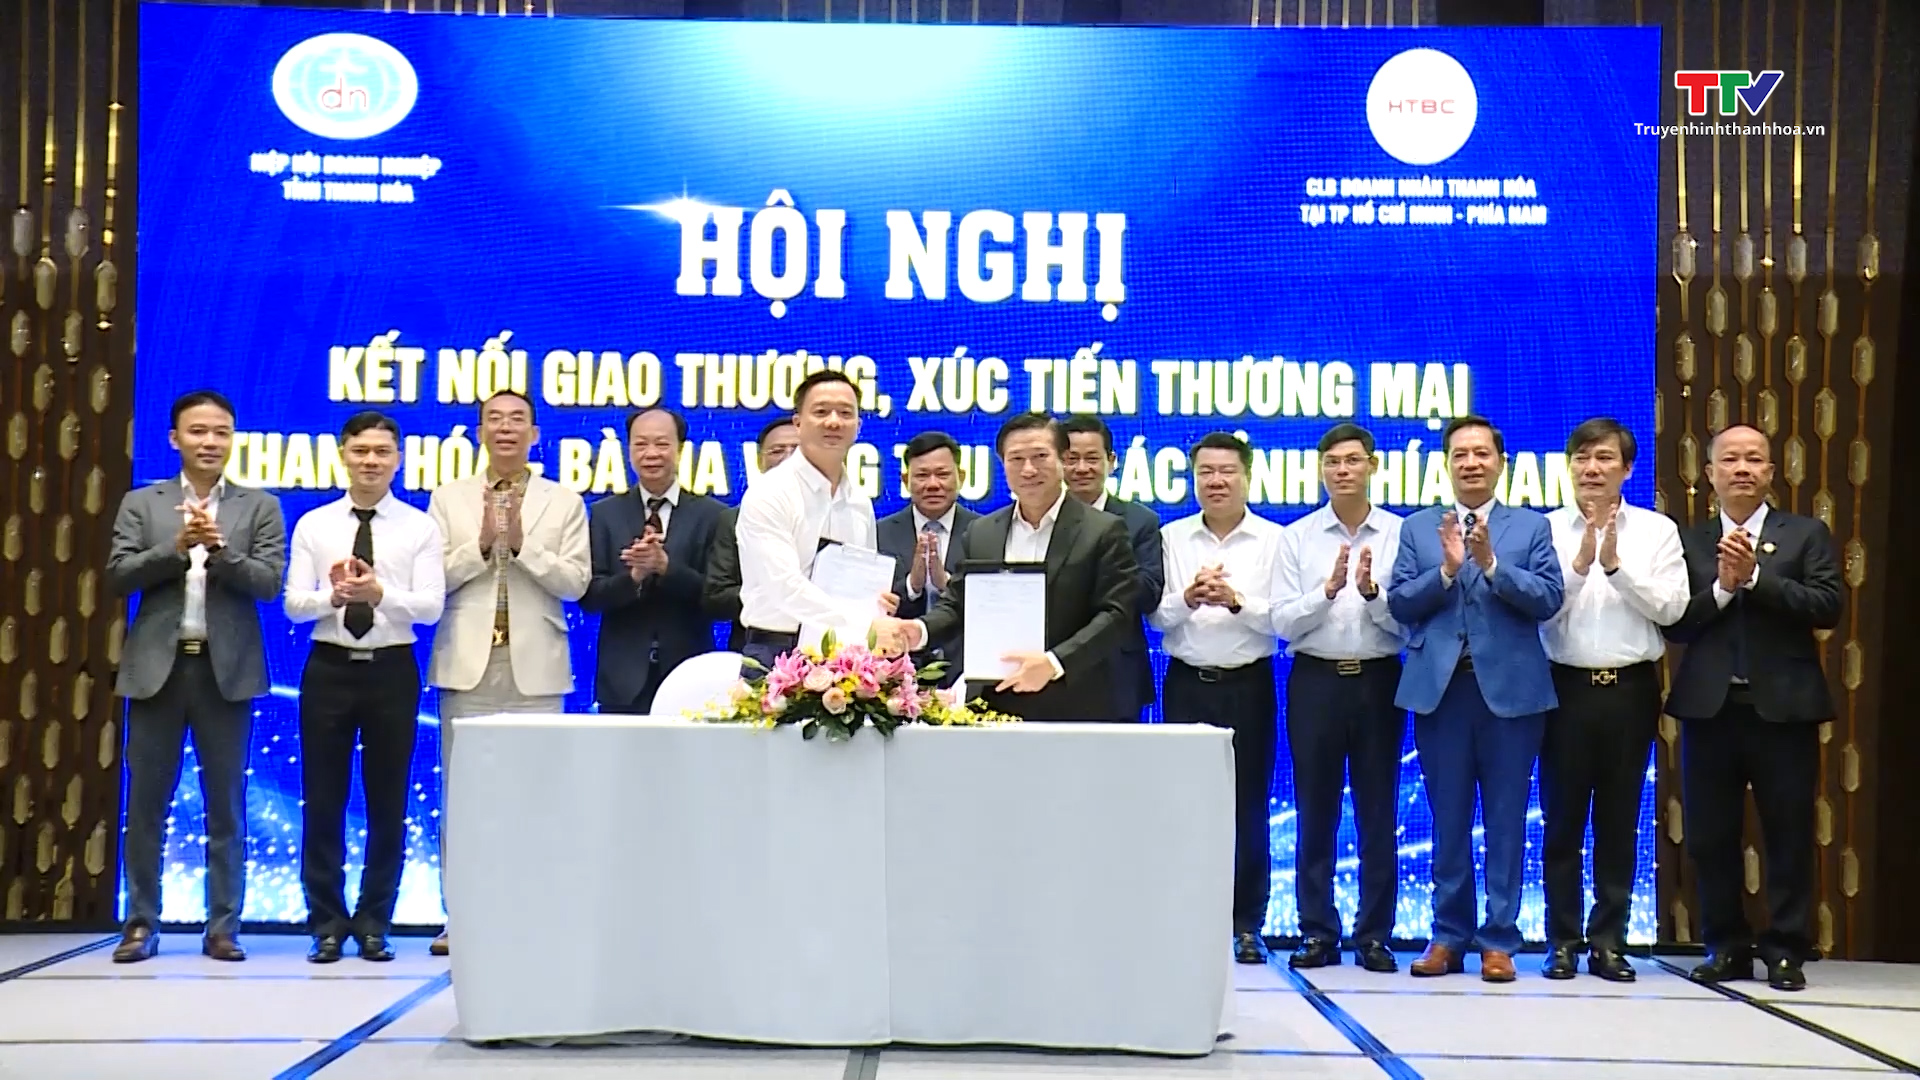 Hoạt động xúc tiến thương mại và đầu tư của doanh nghiệp tỉnh Thanh Hóa - Một năm đầy sôi động- Ảnh 2.